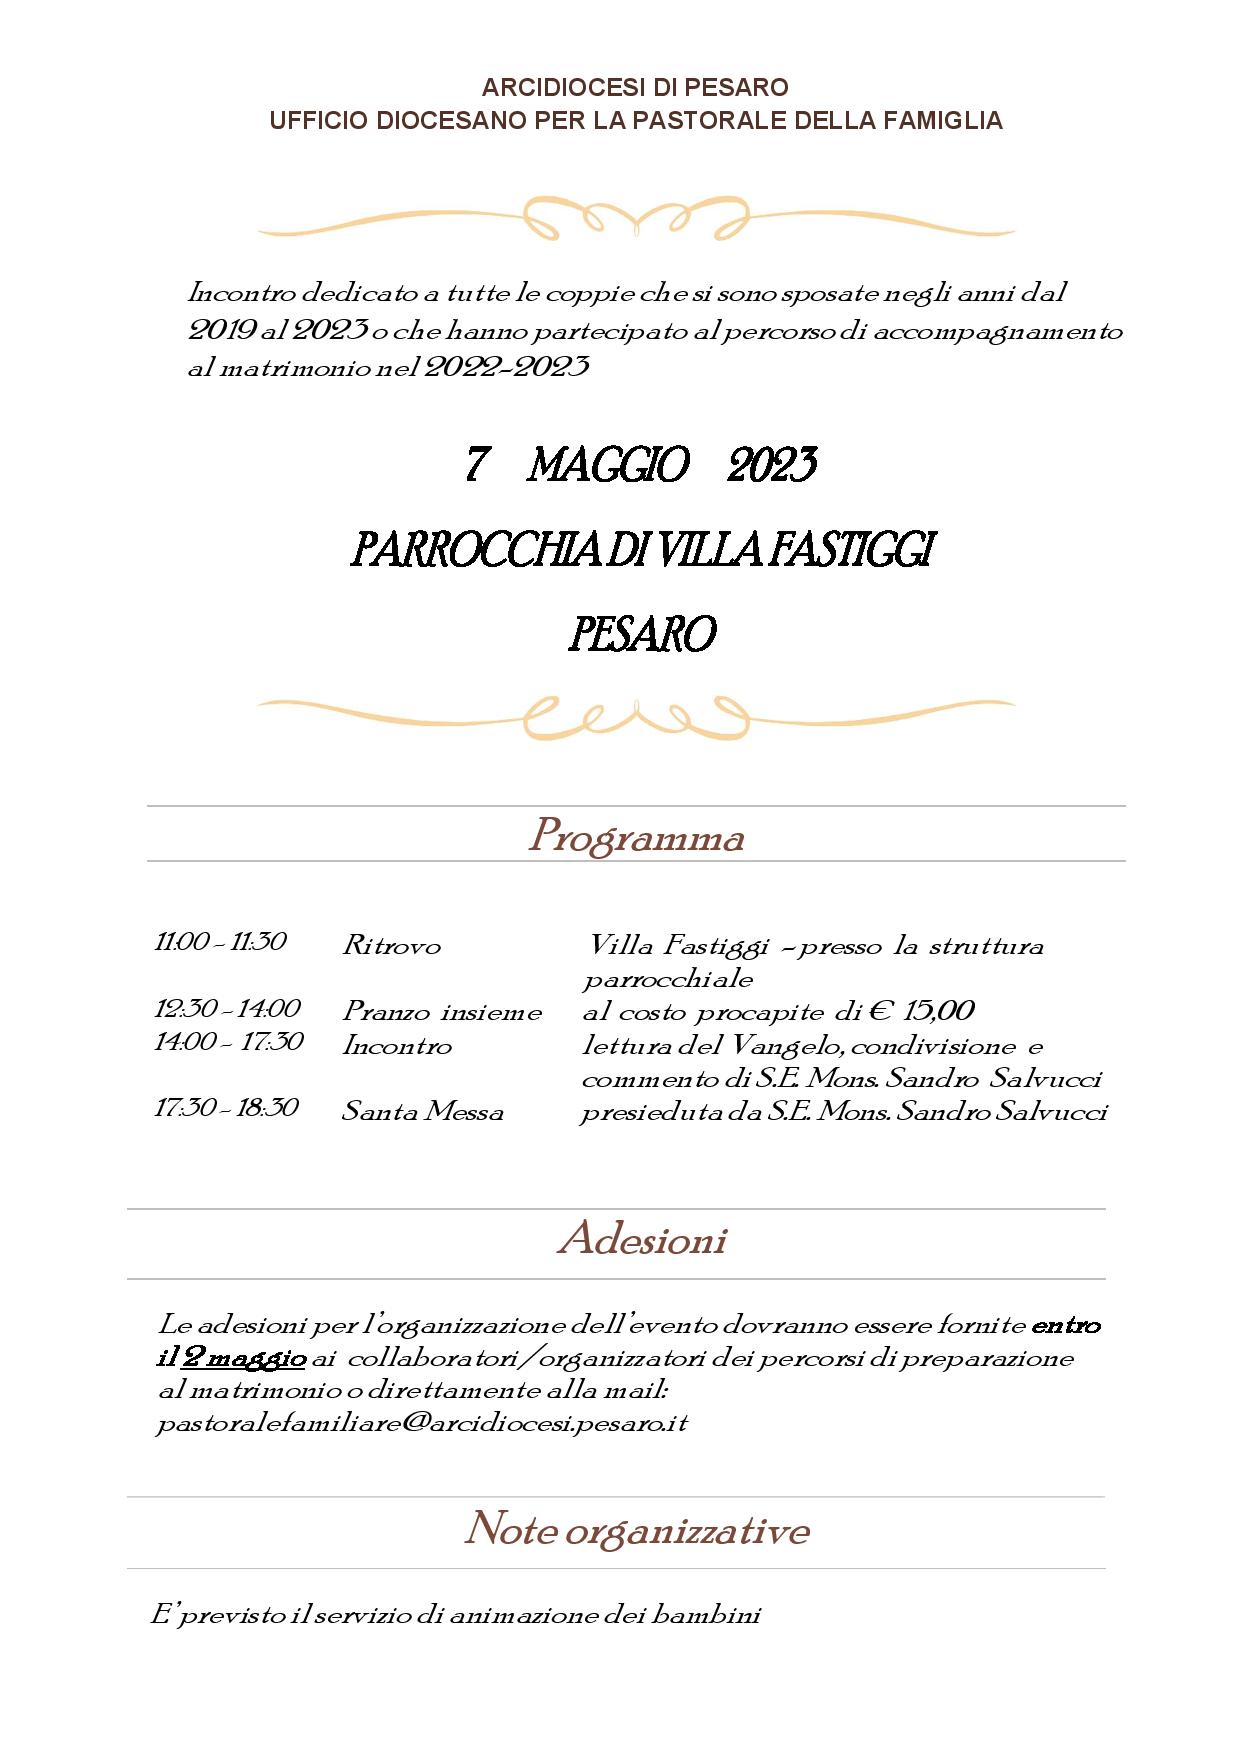 UFFICIO PASTORALE FAMILIARE – 7 maggio 2023 – Incontro a Villa Fastiggi per coppie sposate tra il 2019 e il 2023 o partecipanti al corso di preparazione al matrimonio 2022-2023